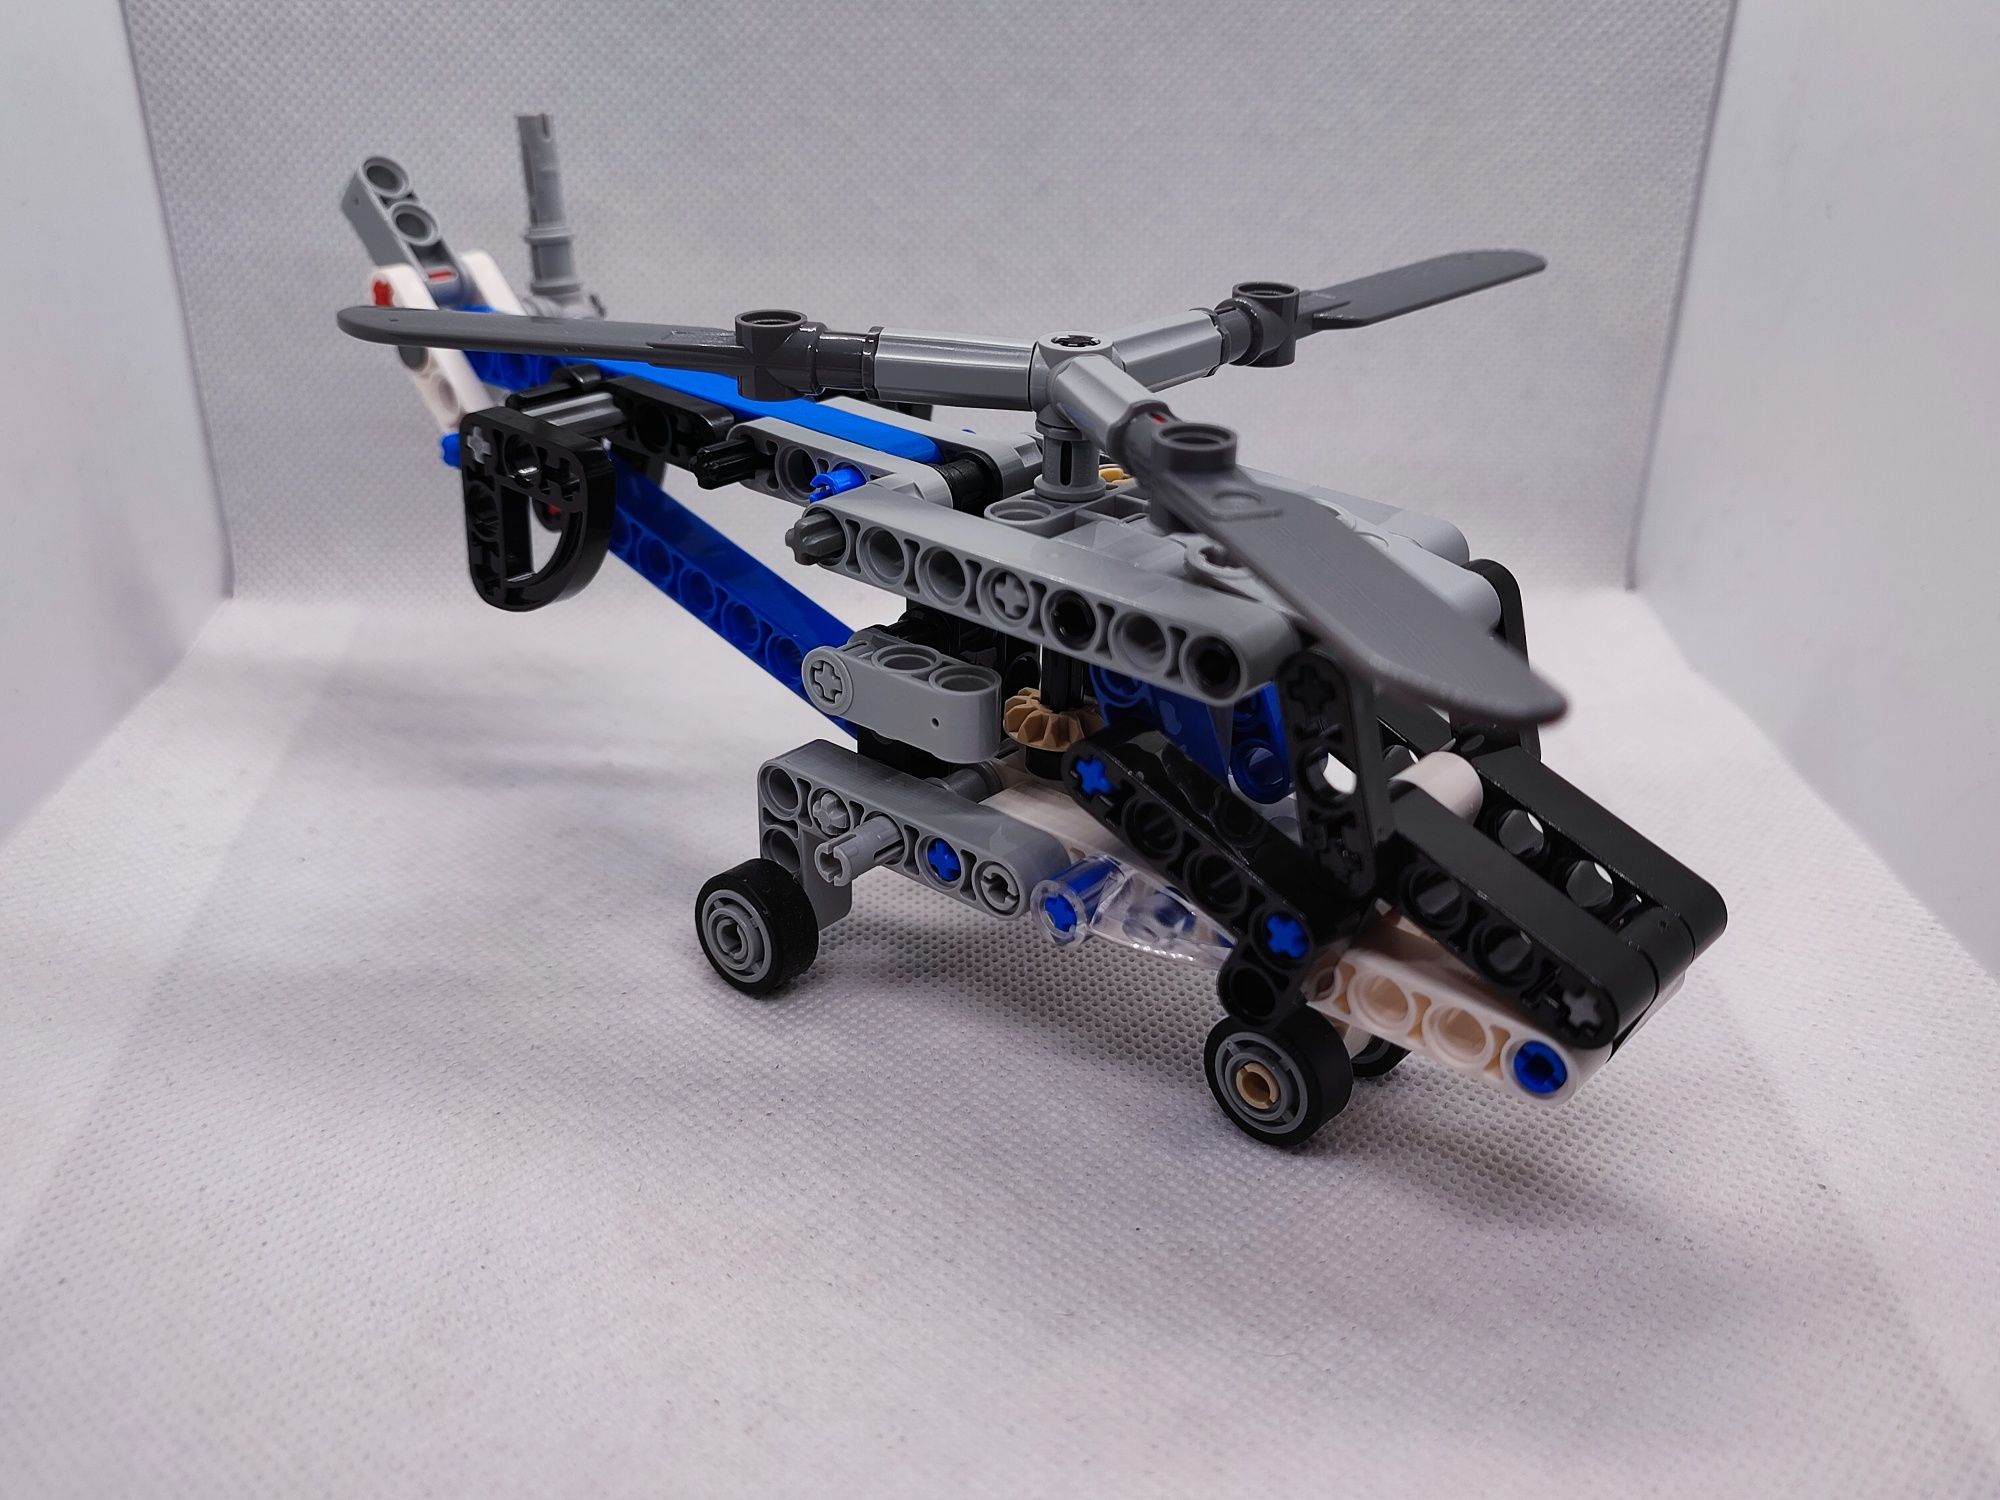 LEGO® 42020 Technic - Helikopter Dwuwirnikowy